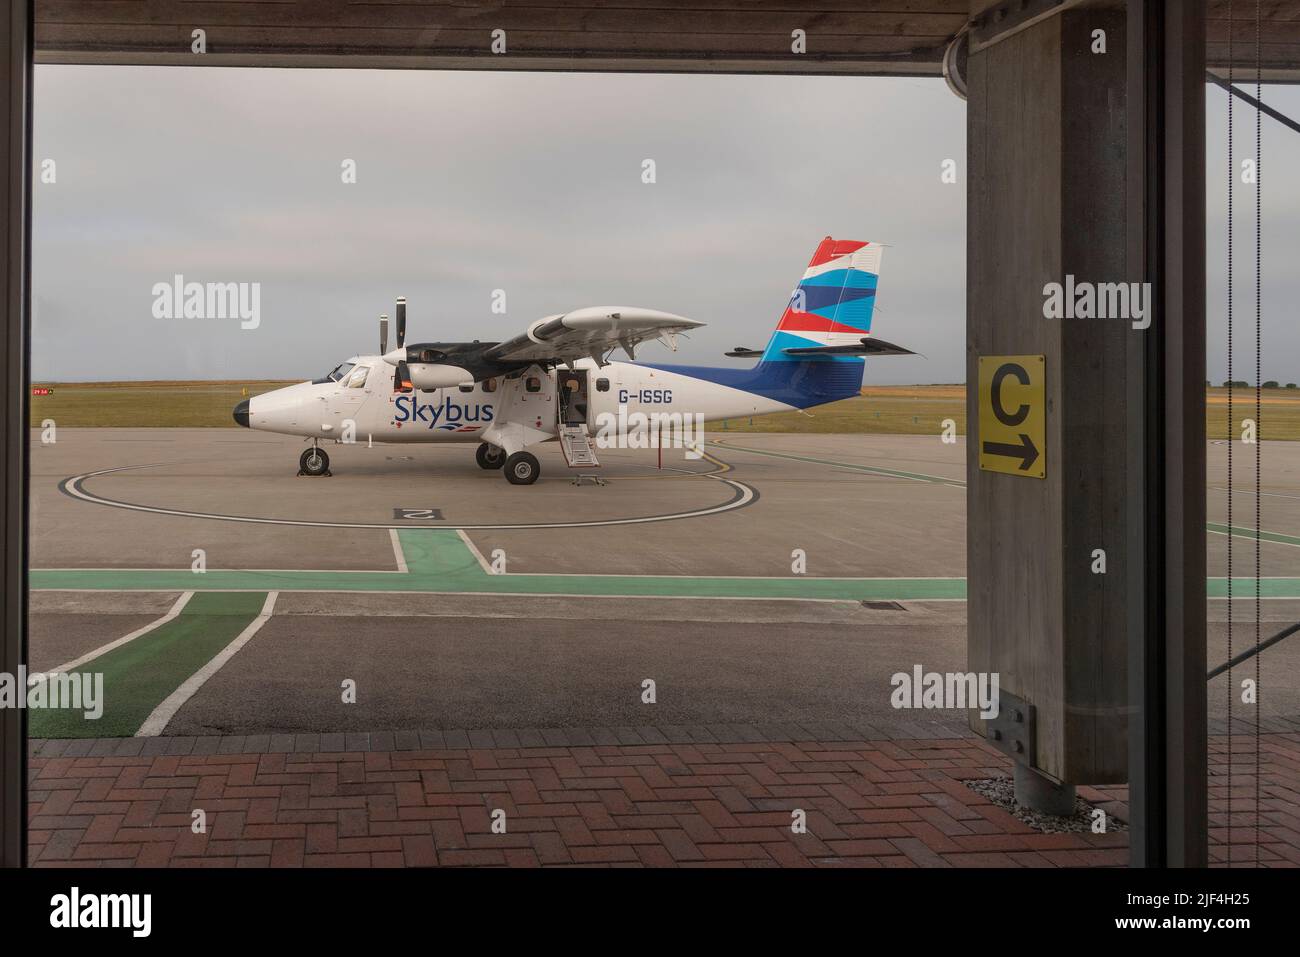 Lands End Airport, St Just, Cornwall, England. VEREINIGTES KÖNIGREICH. Grün gestrichene Fußgängerbrücke zum Flugzeug vom Terminalgebäude. Stockfoto